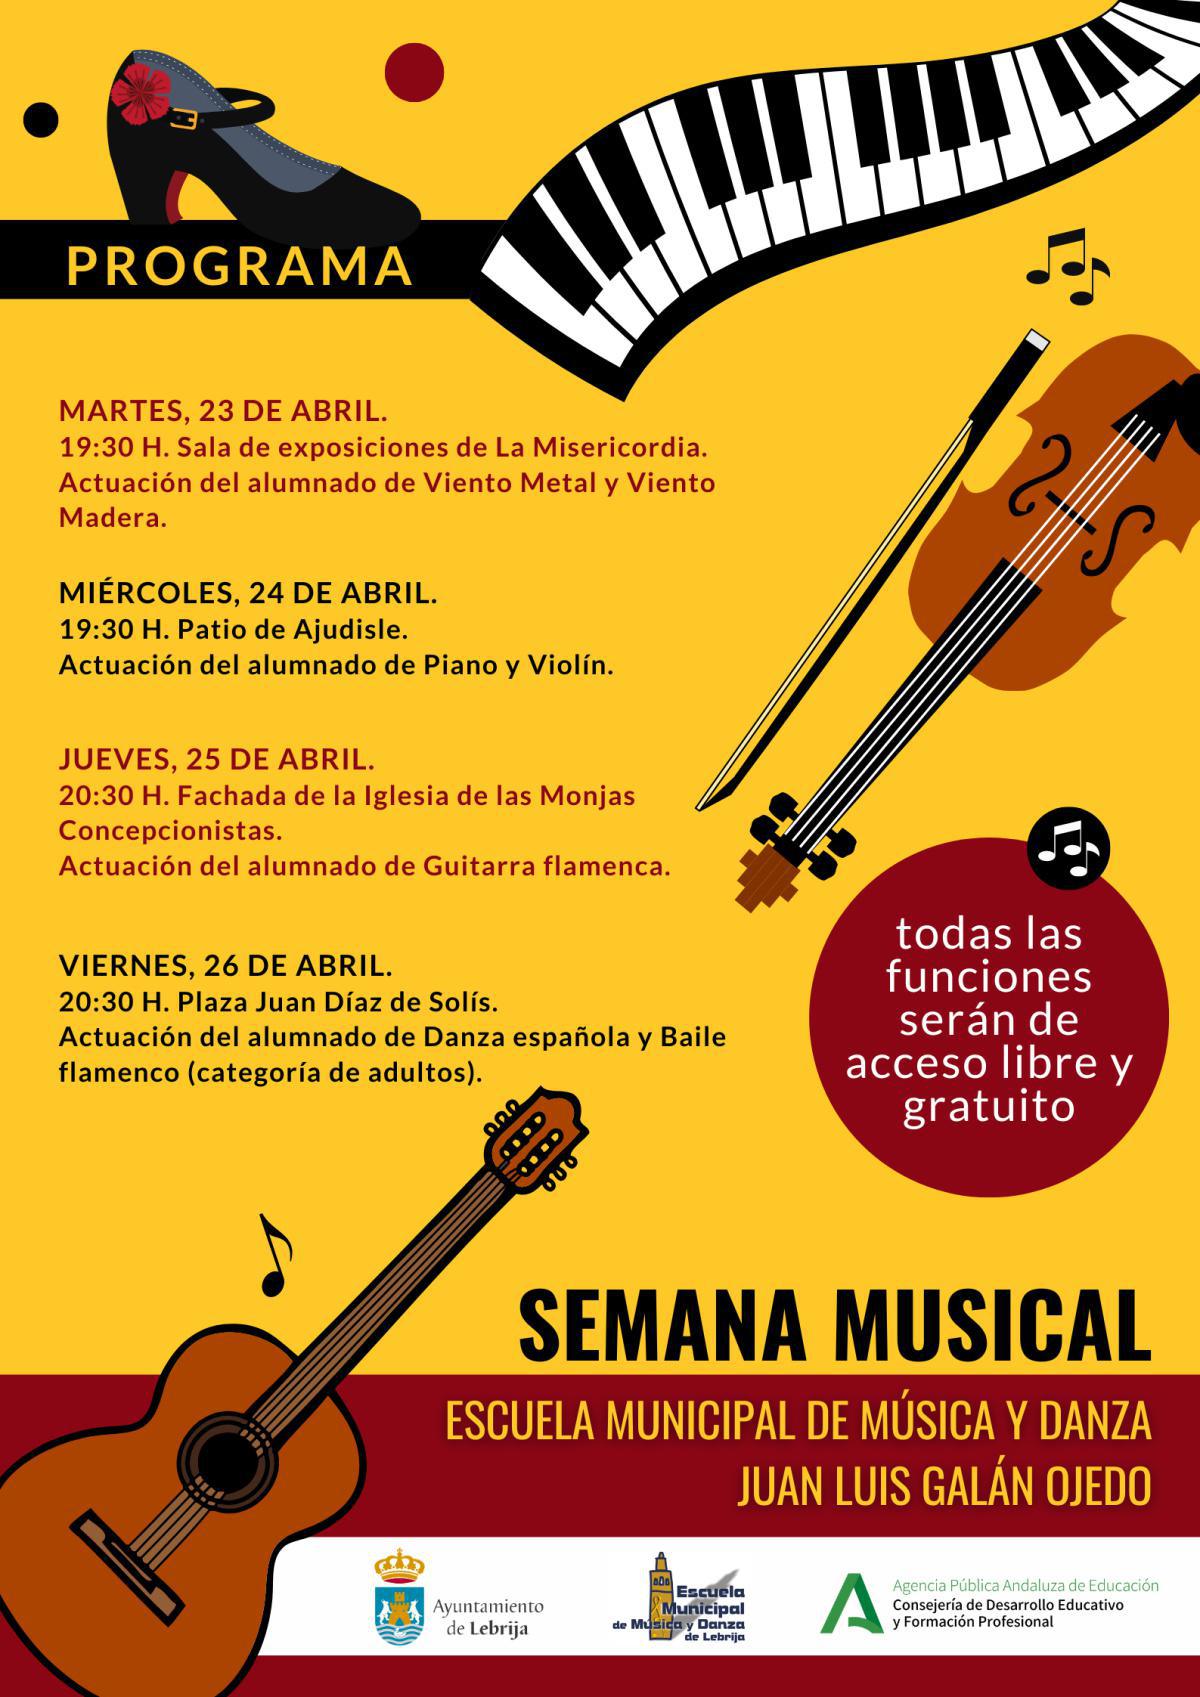 La Escuela de Municipal de Música y Danza celebra su semana musical del 23 al 26 de abril